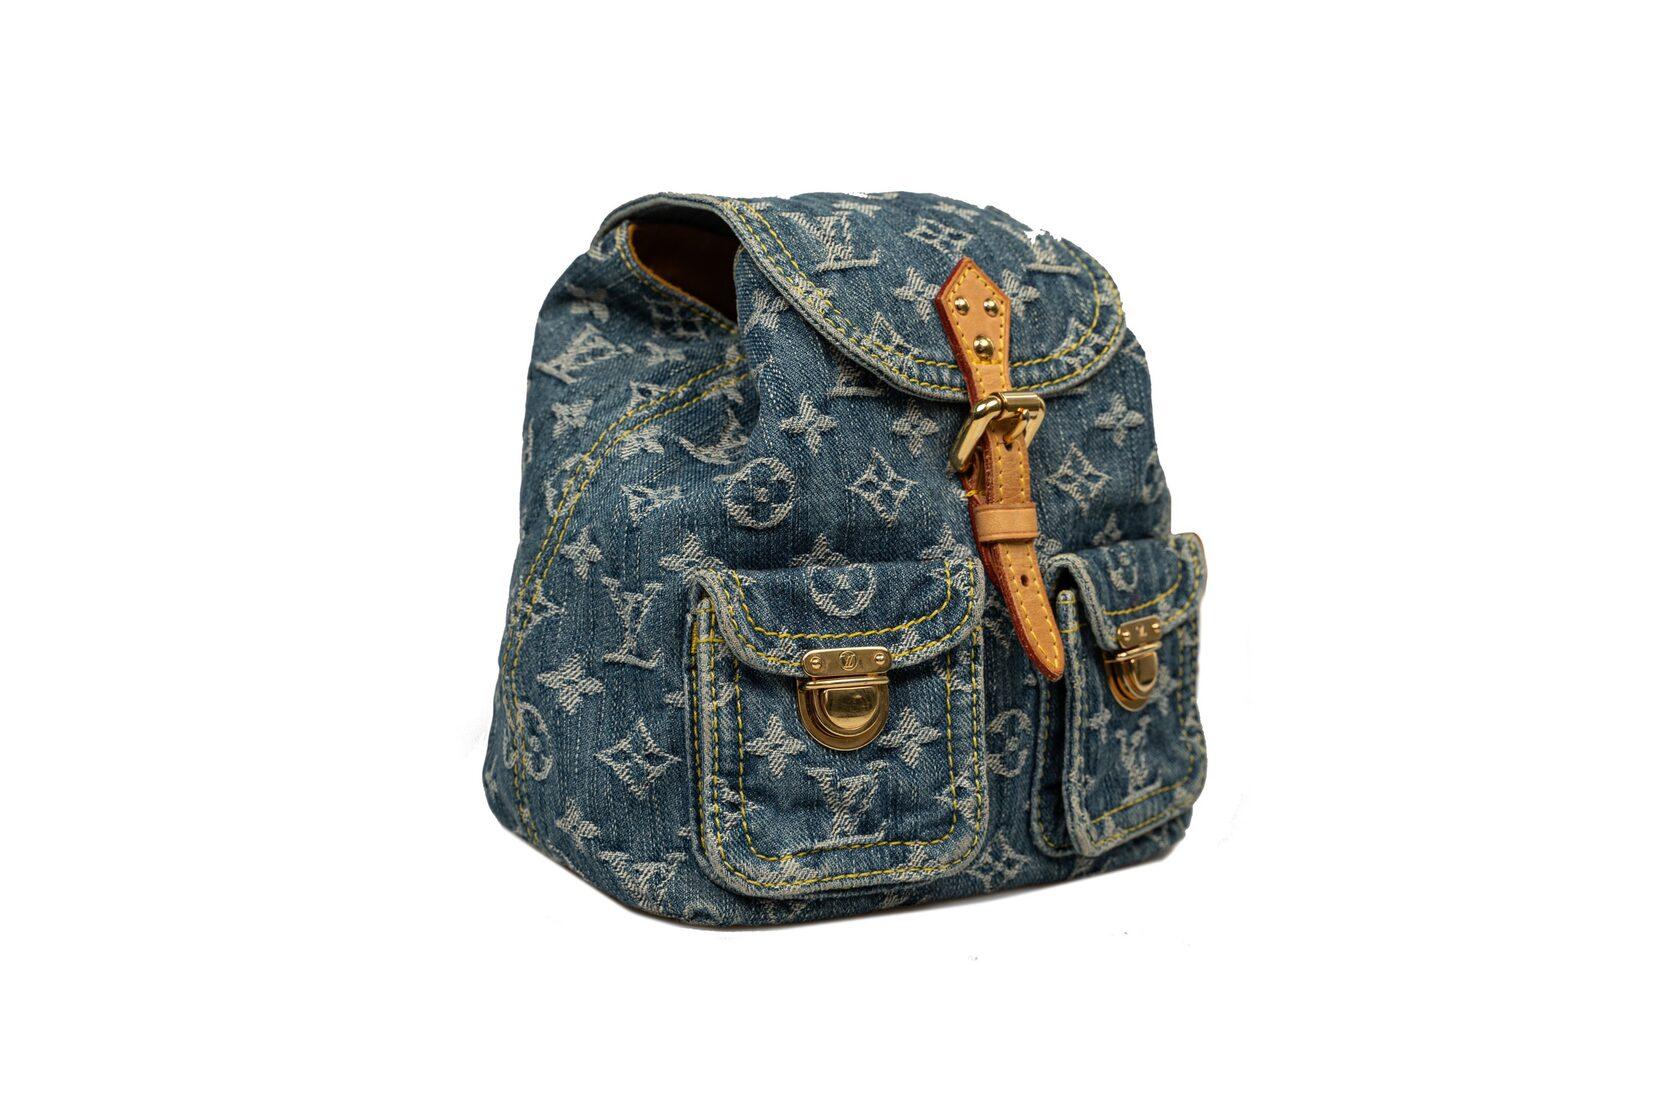 Fashion Cowboy Style Simple Zip Denim Backpack  Light Blue grhmf22000183   Denim backpack Jeans bag Denim bag